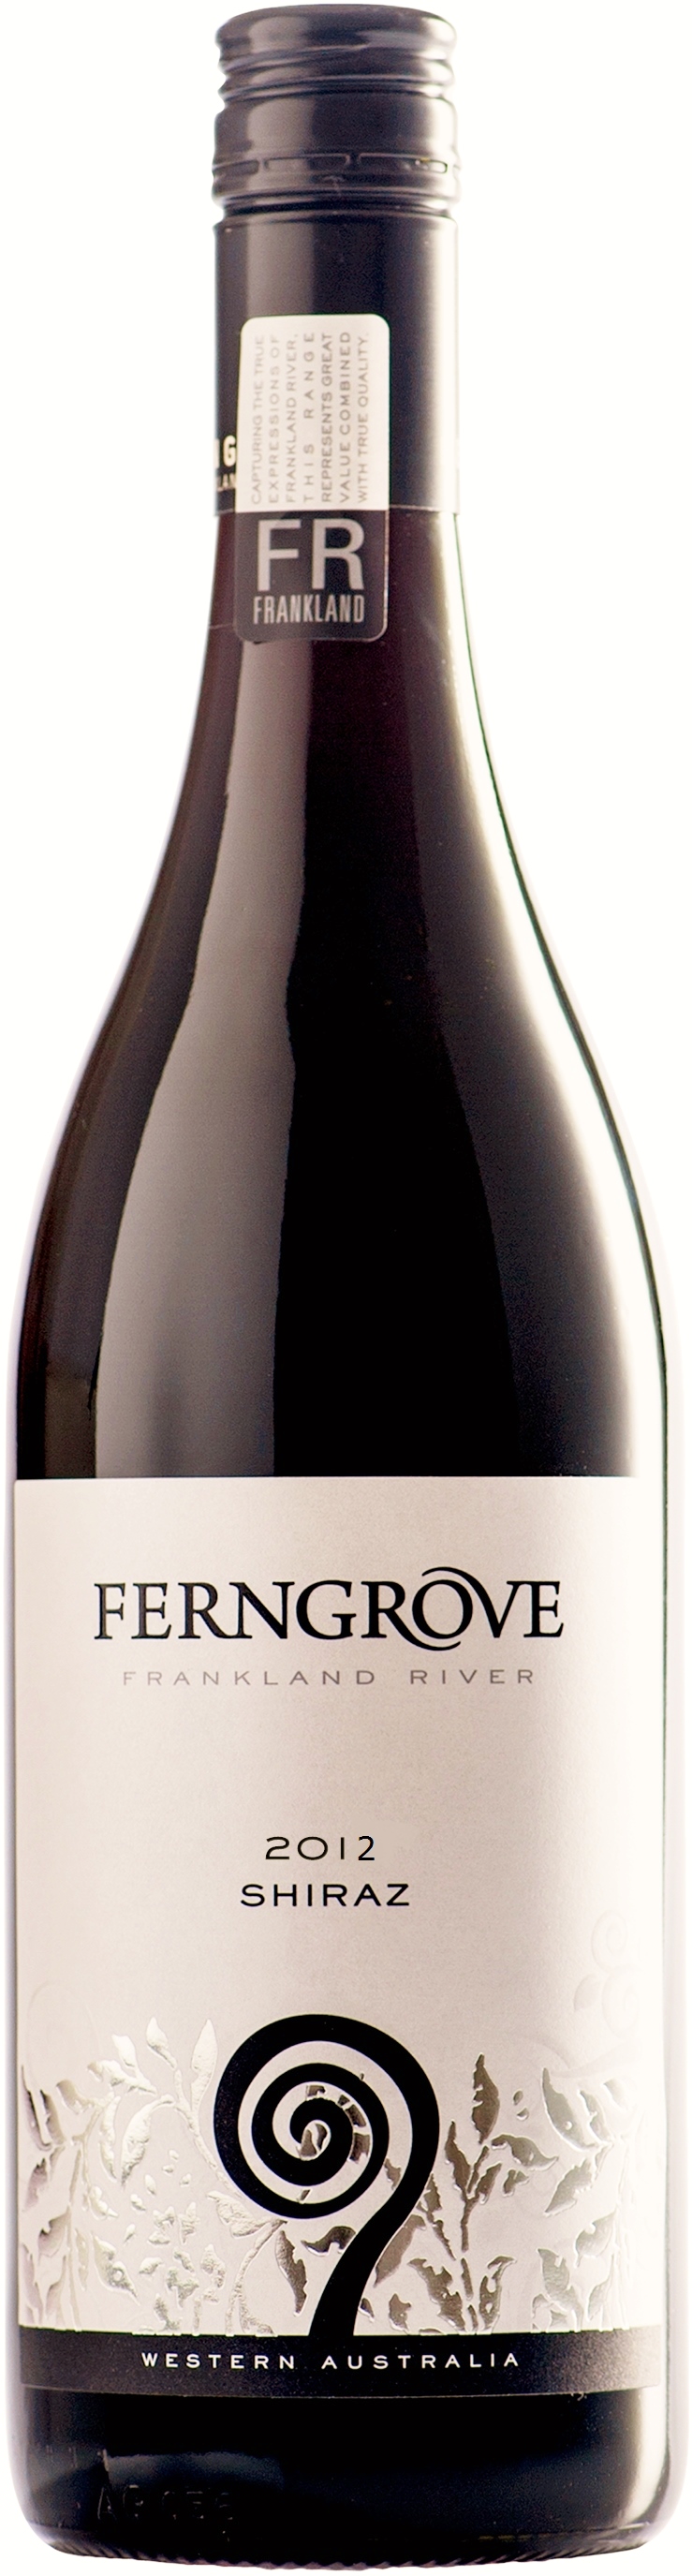 ファーングローブ フランクランド リバー シラーズ 2012 オーストラリアワイン 750ml